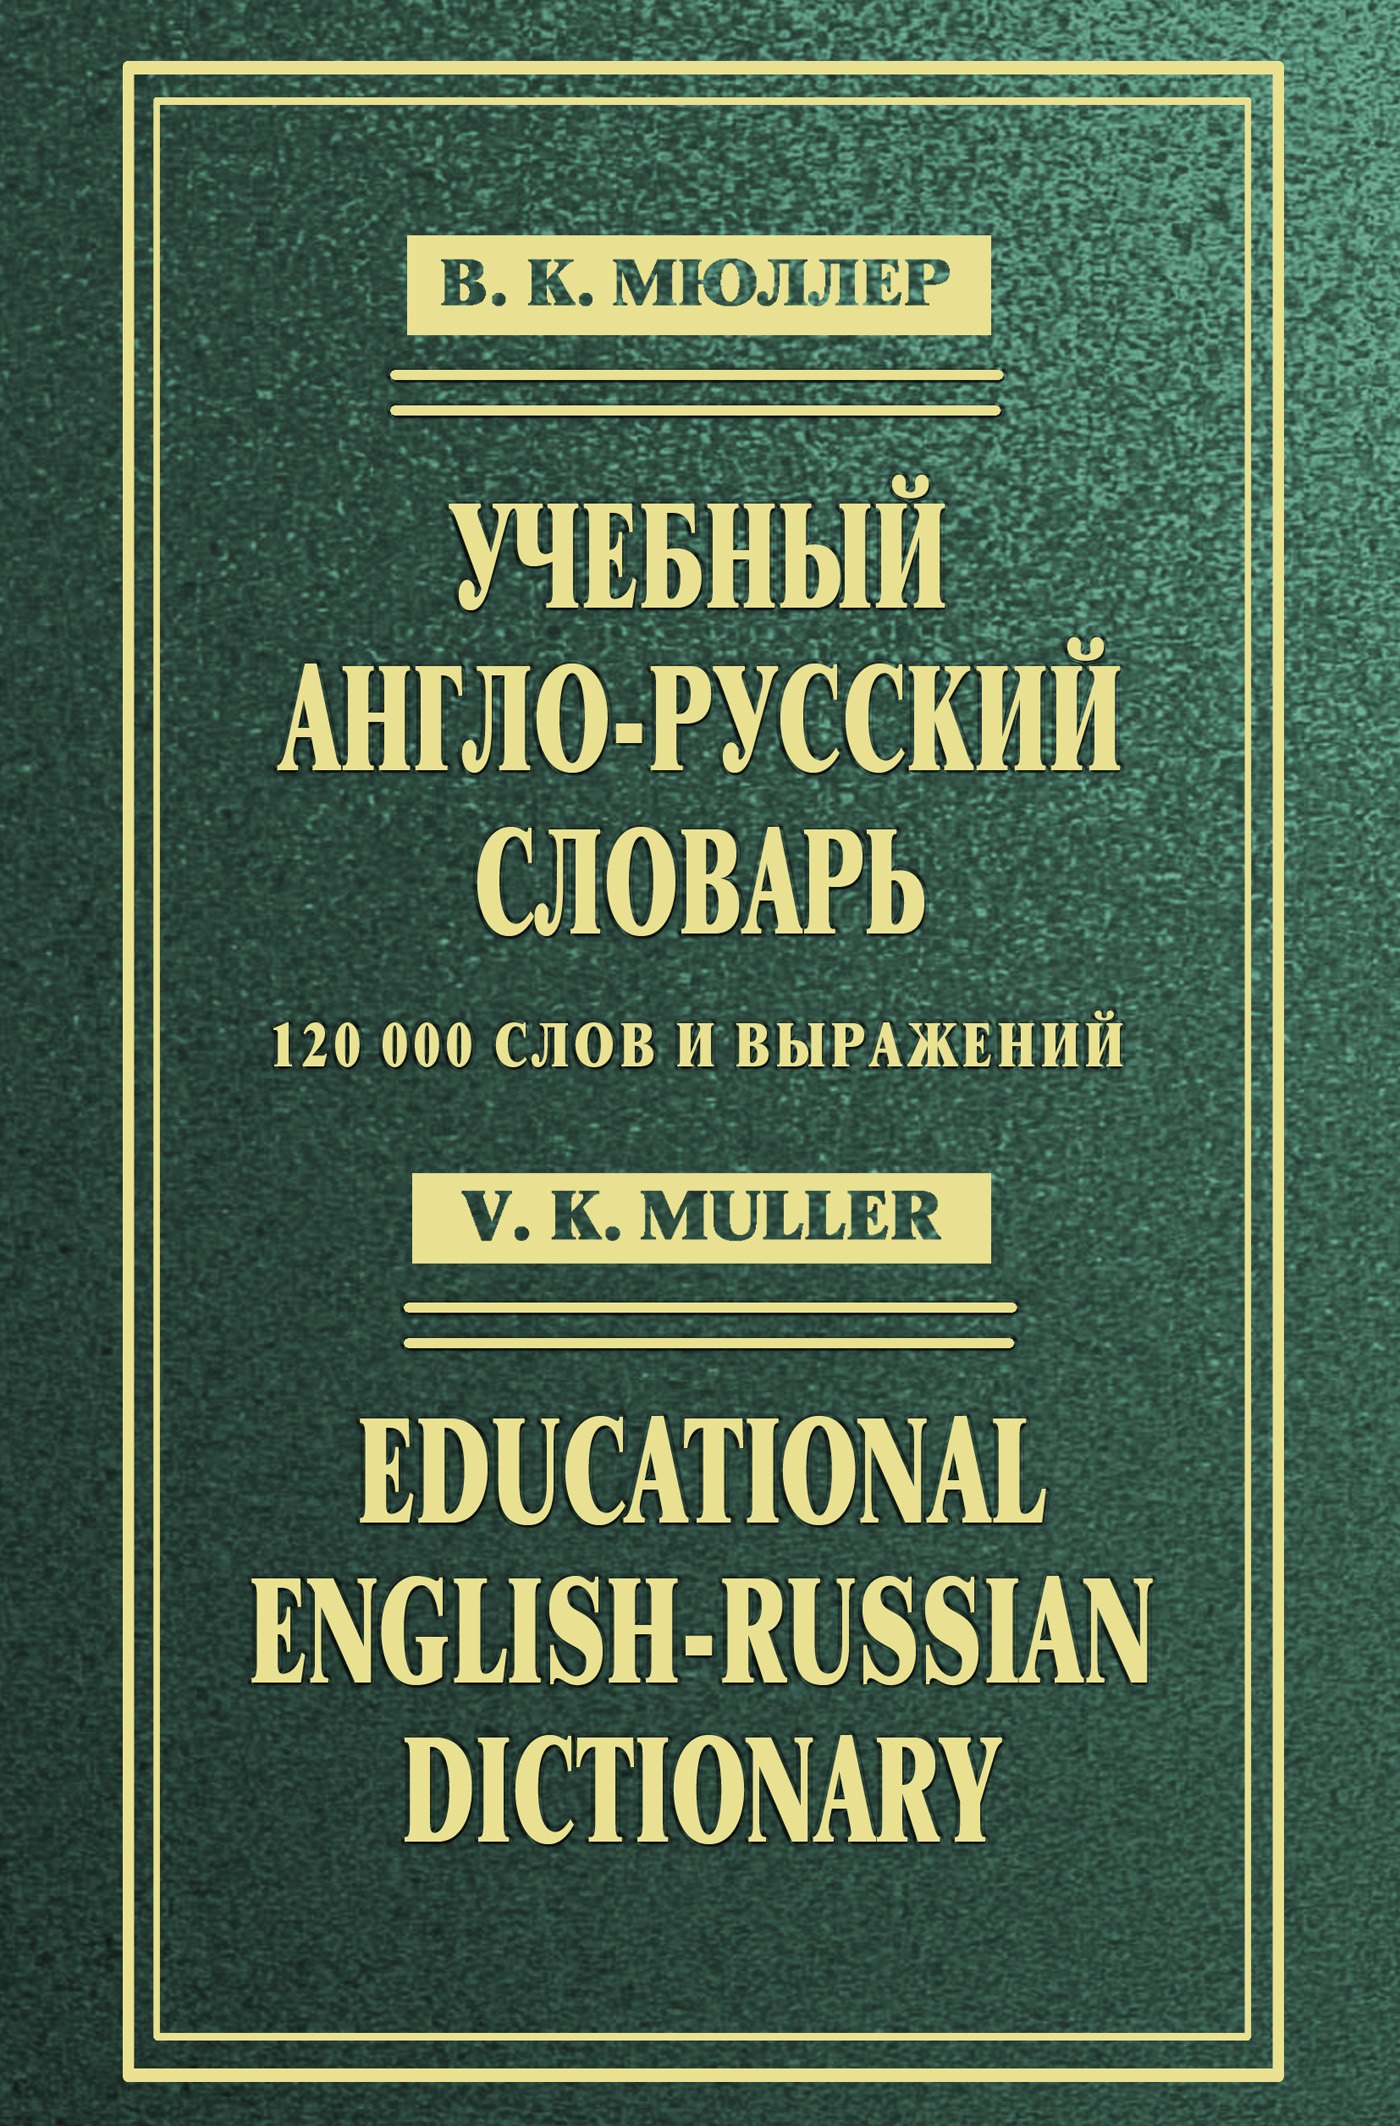 Учебный англо-русский словарь / Educational English-Russian Dictionary